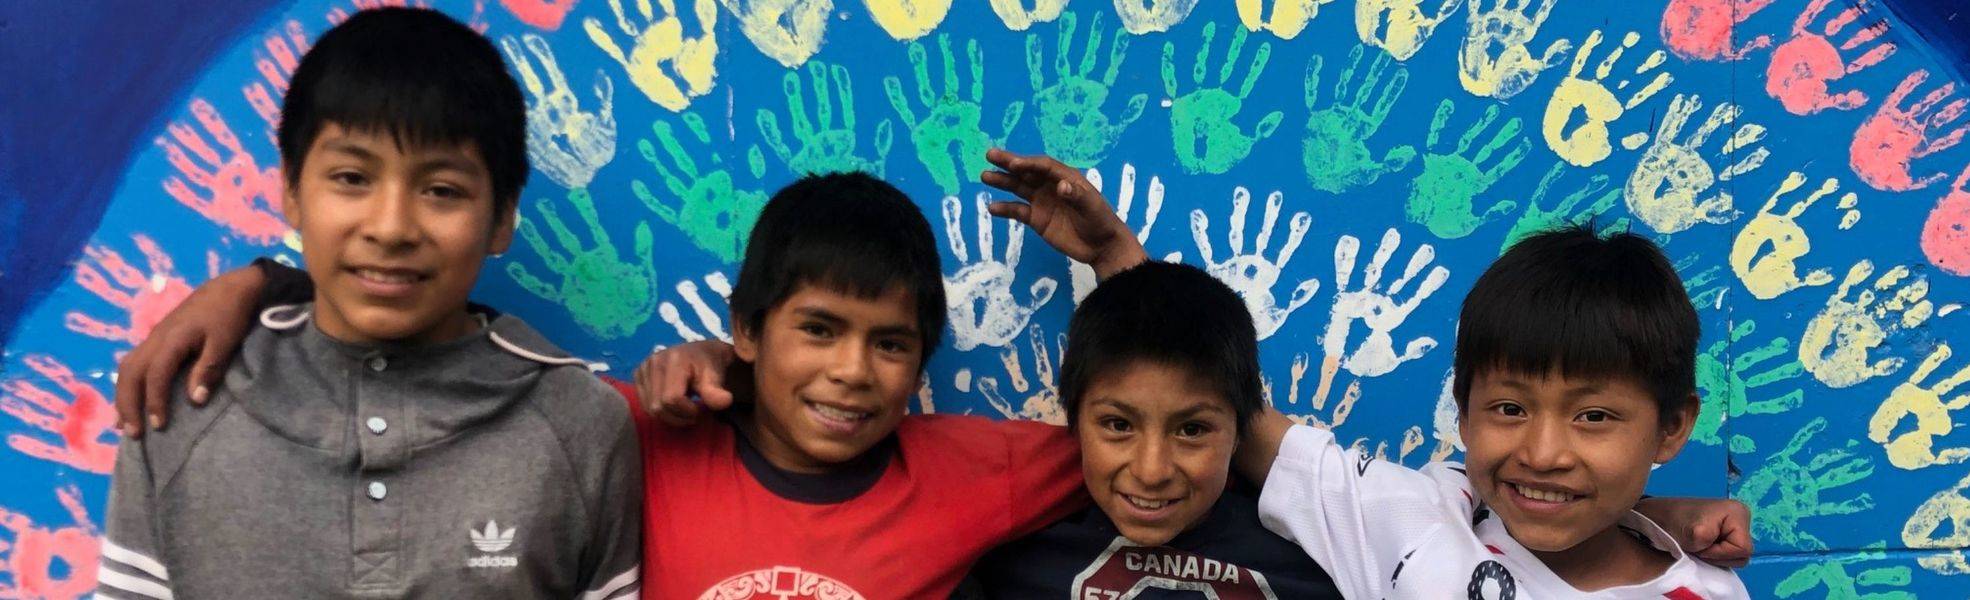 Freiwilligenarbeit in Peru in einer Schule